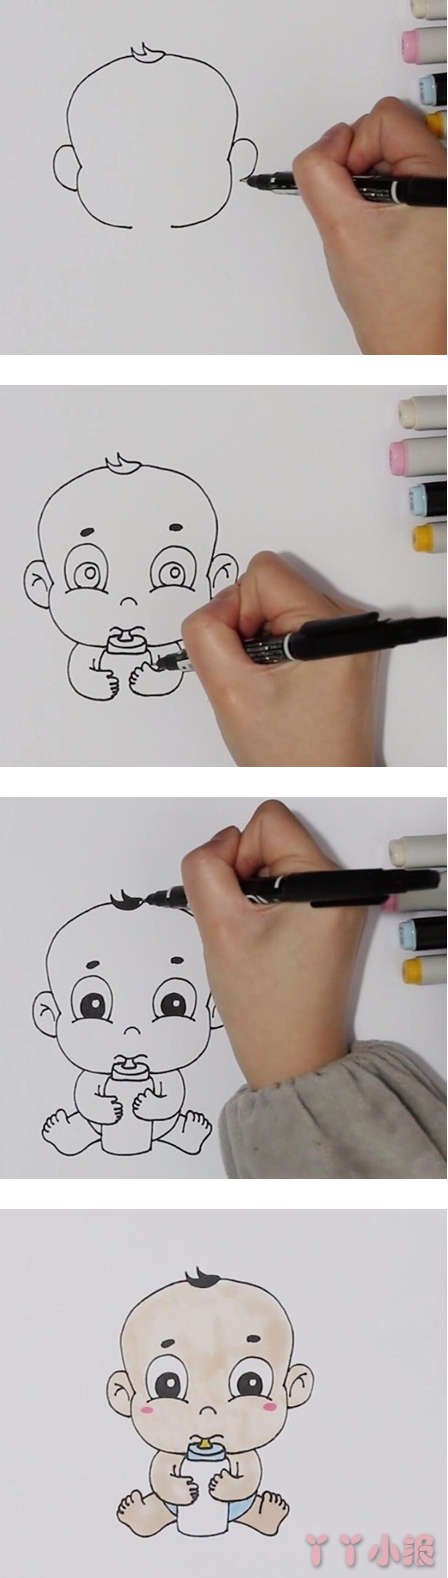 可爱小婴儿的画法步骤教程涂色简单好看